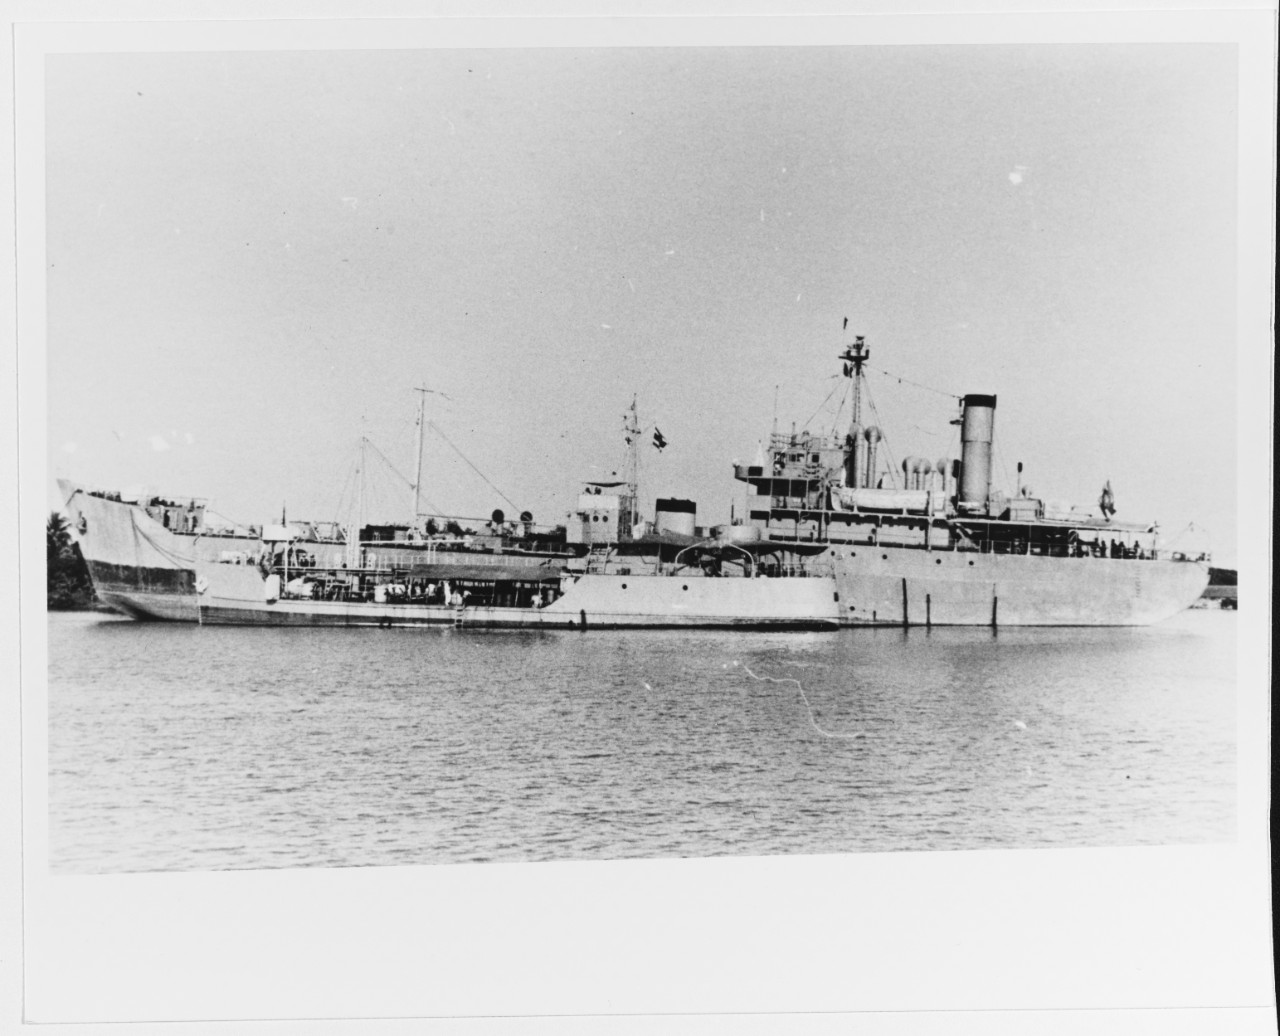 SAMUI (ex- U.S. Navy YOG-60, 1944) and MATRA (ex-Japanese WAKAKASA MARU, 1945) (background)